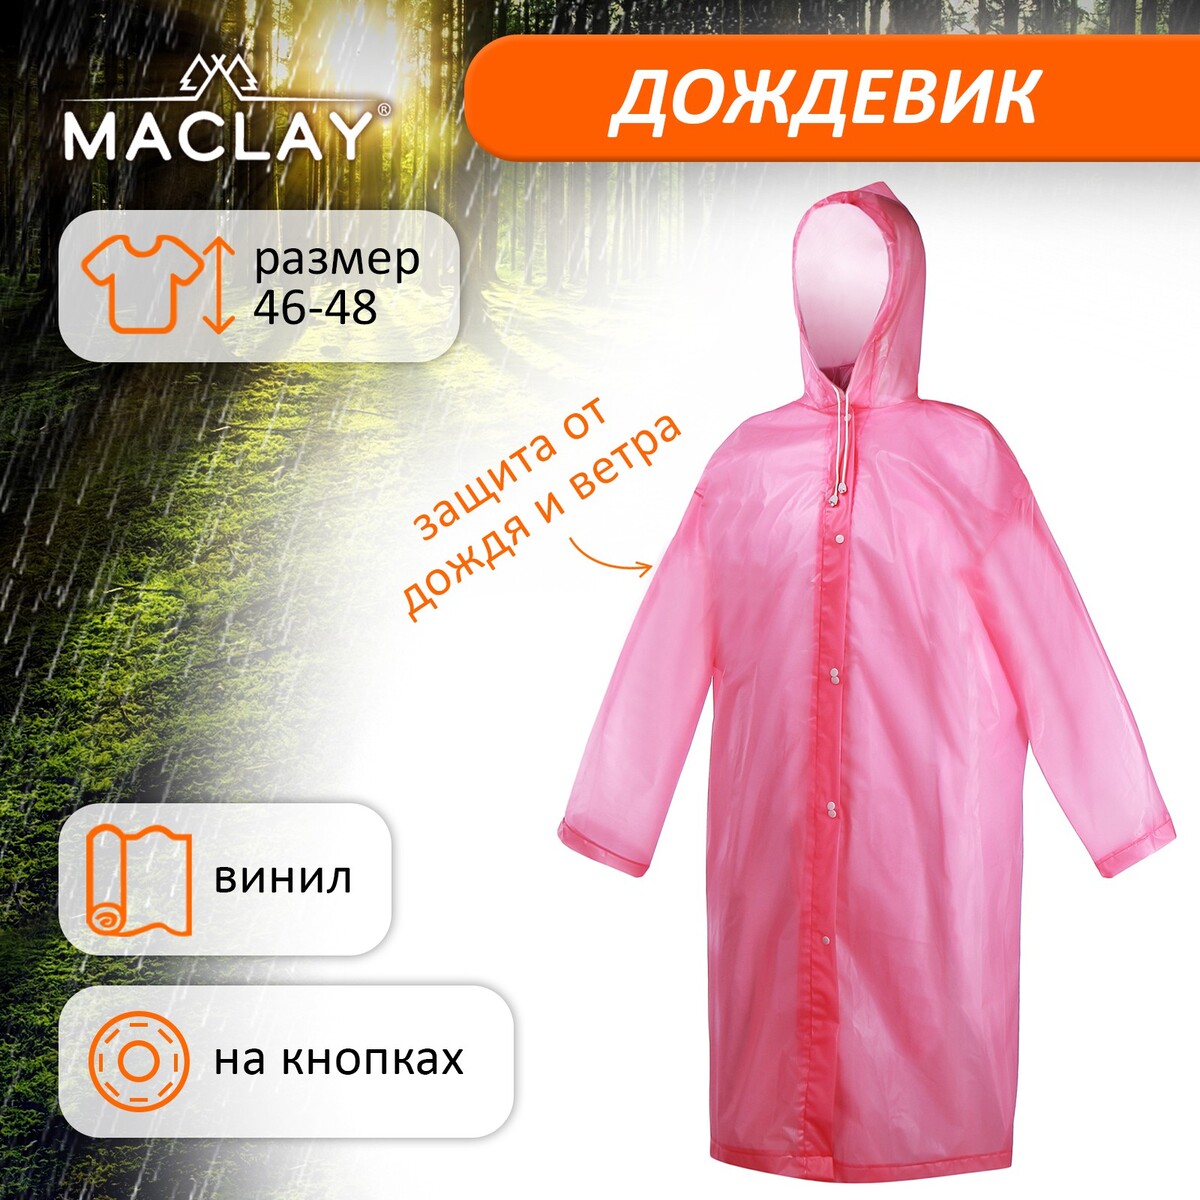 Дождевик-плащ maclay, р. 46-48, цвет розовый дождевик peg perego bassinets